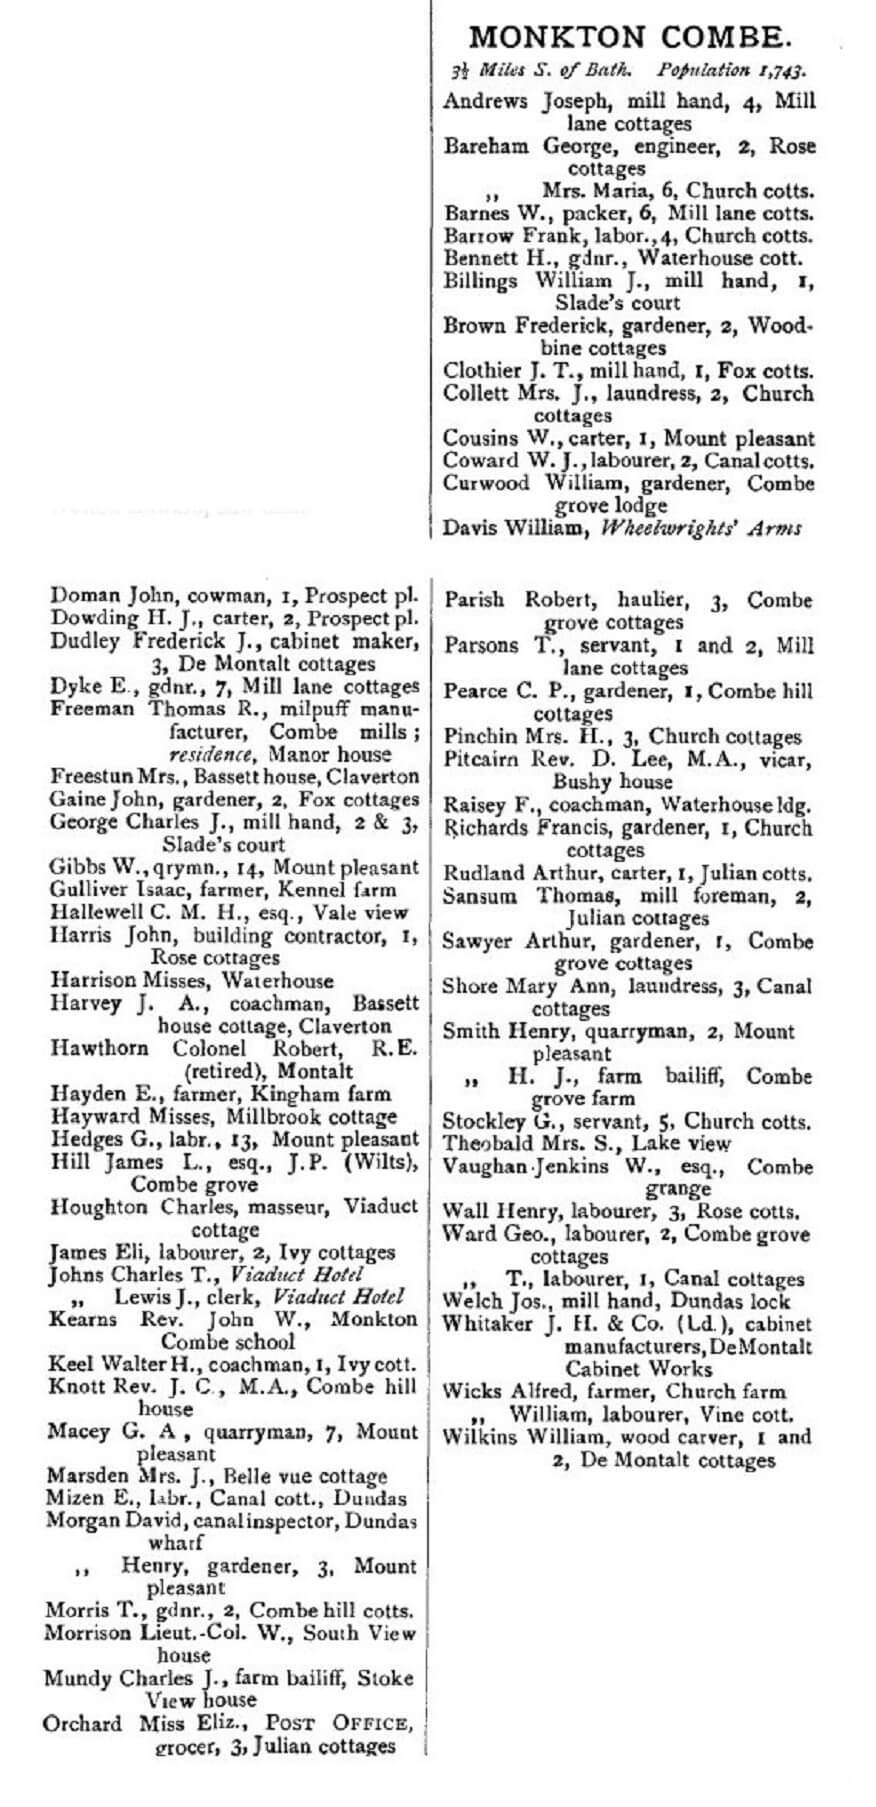 1902 po directory monkton combe